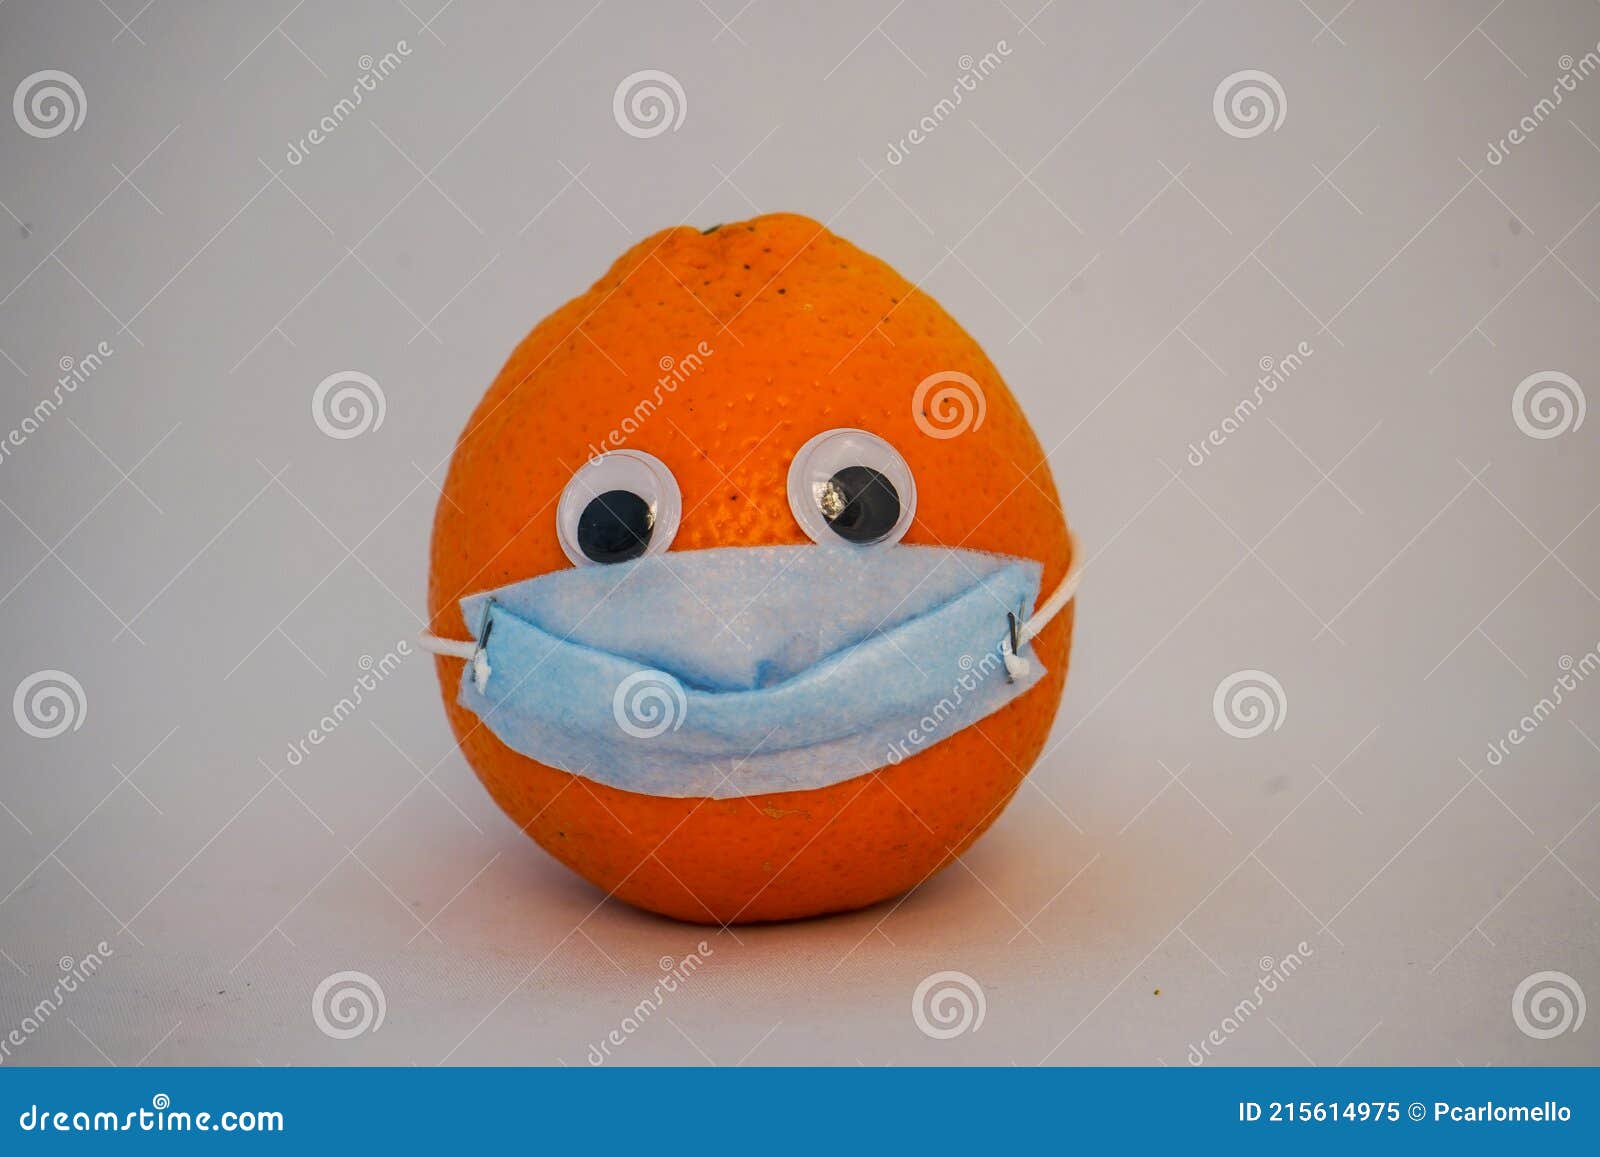 arancio con maschera chirurgica